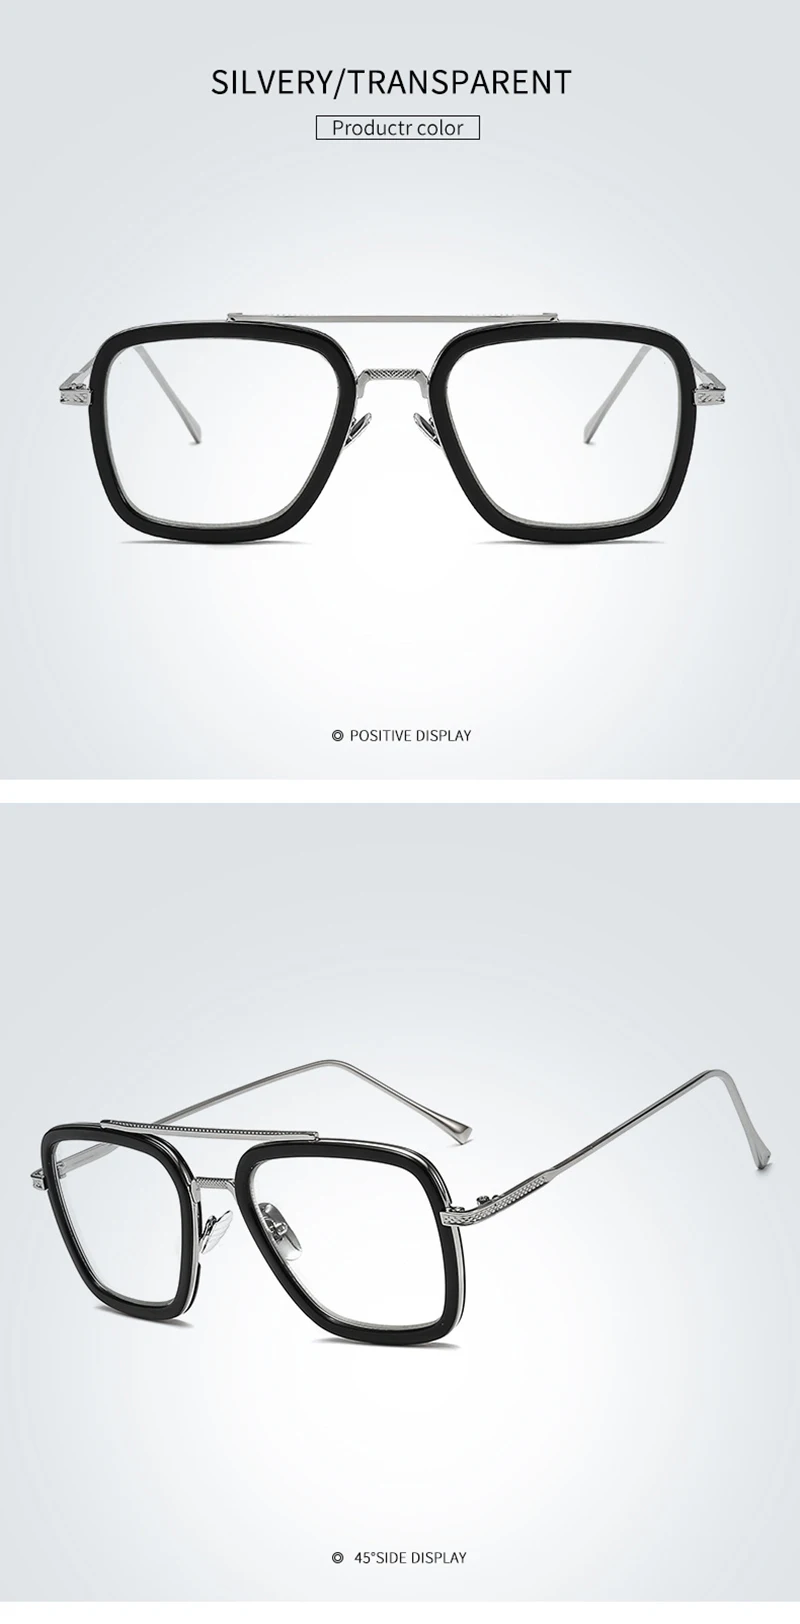 NODARE 2020 Fashion Avengers Tony Stark Flight 006 Style Sunglasses Men Square Aviation Brand Design Sun Glasses Oculos De Sol